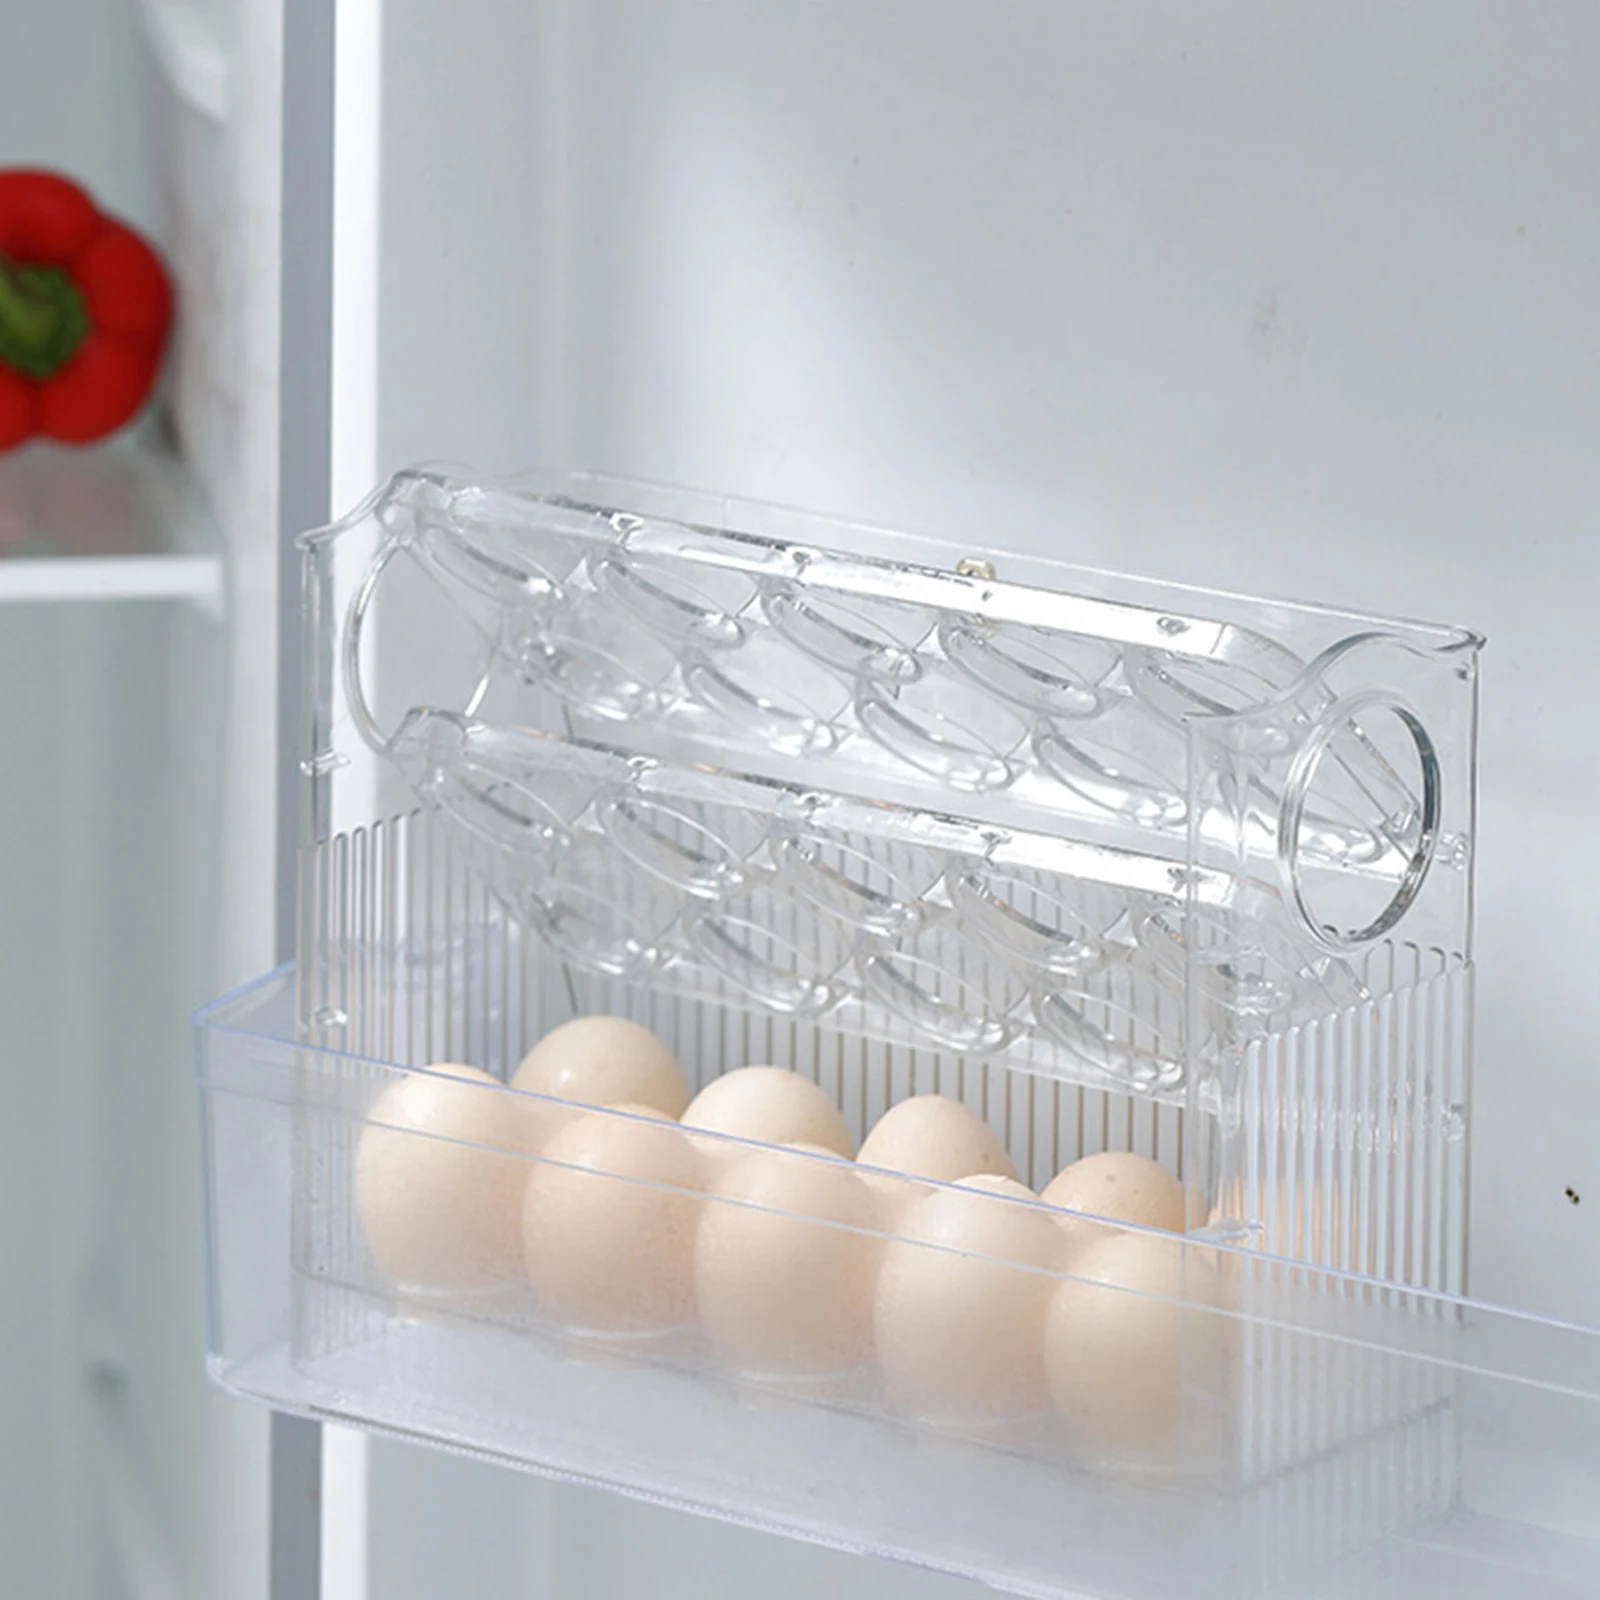 Държач За Съхранение На Яйца Хладилник Срок На Годност За Яйцата, Кутия За Съхранение На Пресни Кухненски Яйца Багажник За Изложбата На Стоки Контейнер За Яйца Органайзер За Хладилник